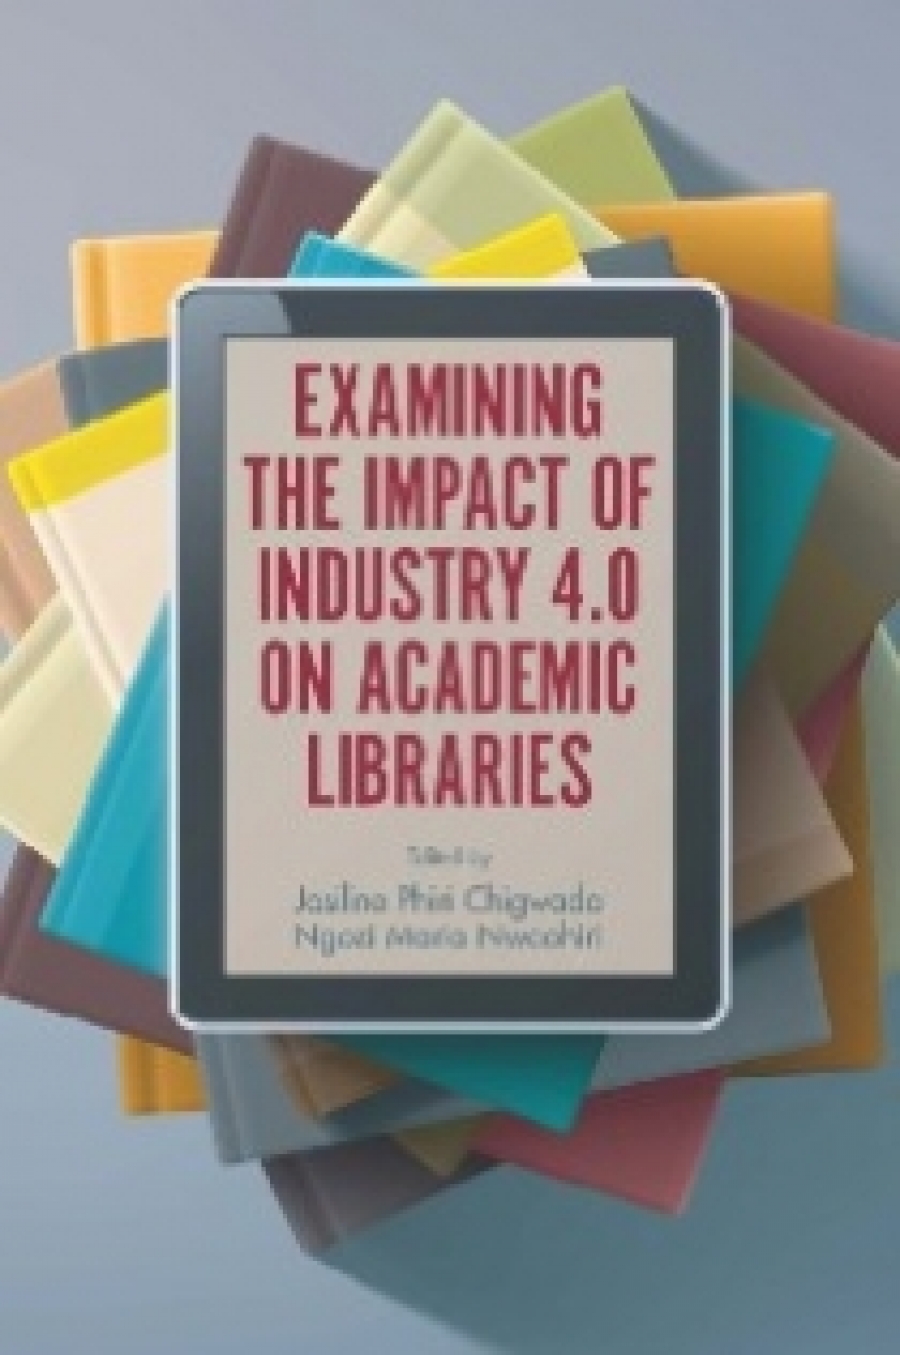 Josiline Phiri Chigwada, Ngozi Maria Nwaohiri Examining the impact of industry 4.0 on academic libraries 